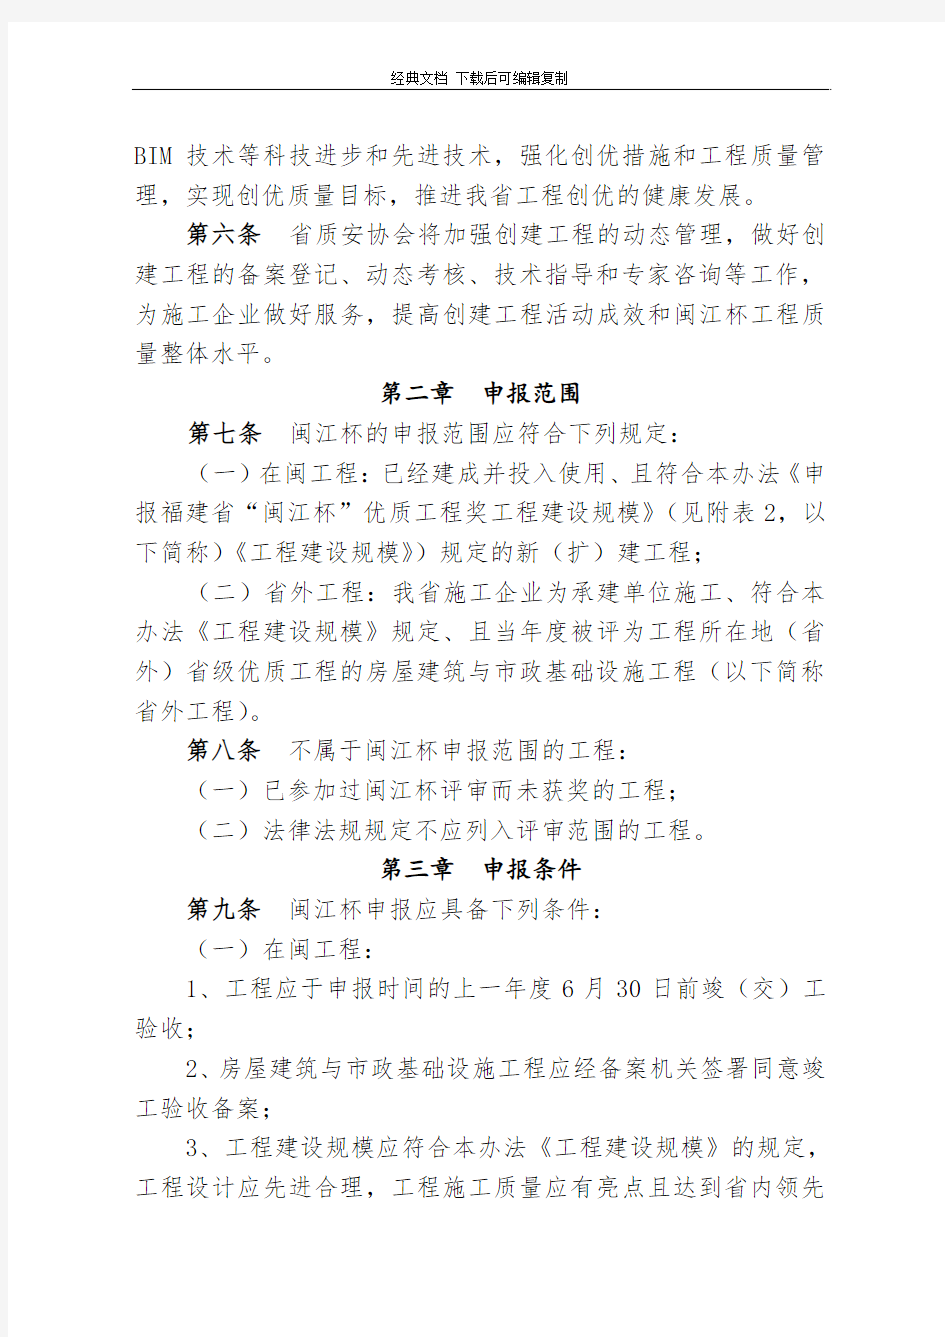 福建省“闽江杯”优质工程奖评审办法(2014年修订)附件